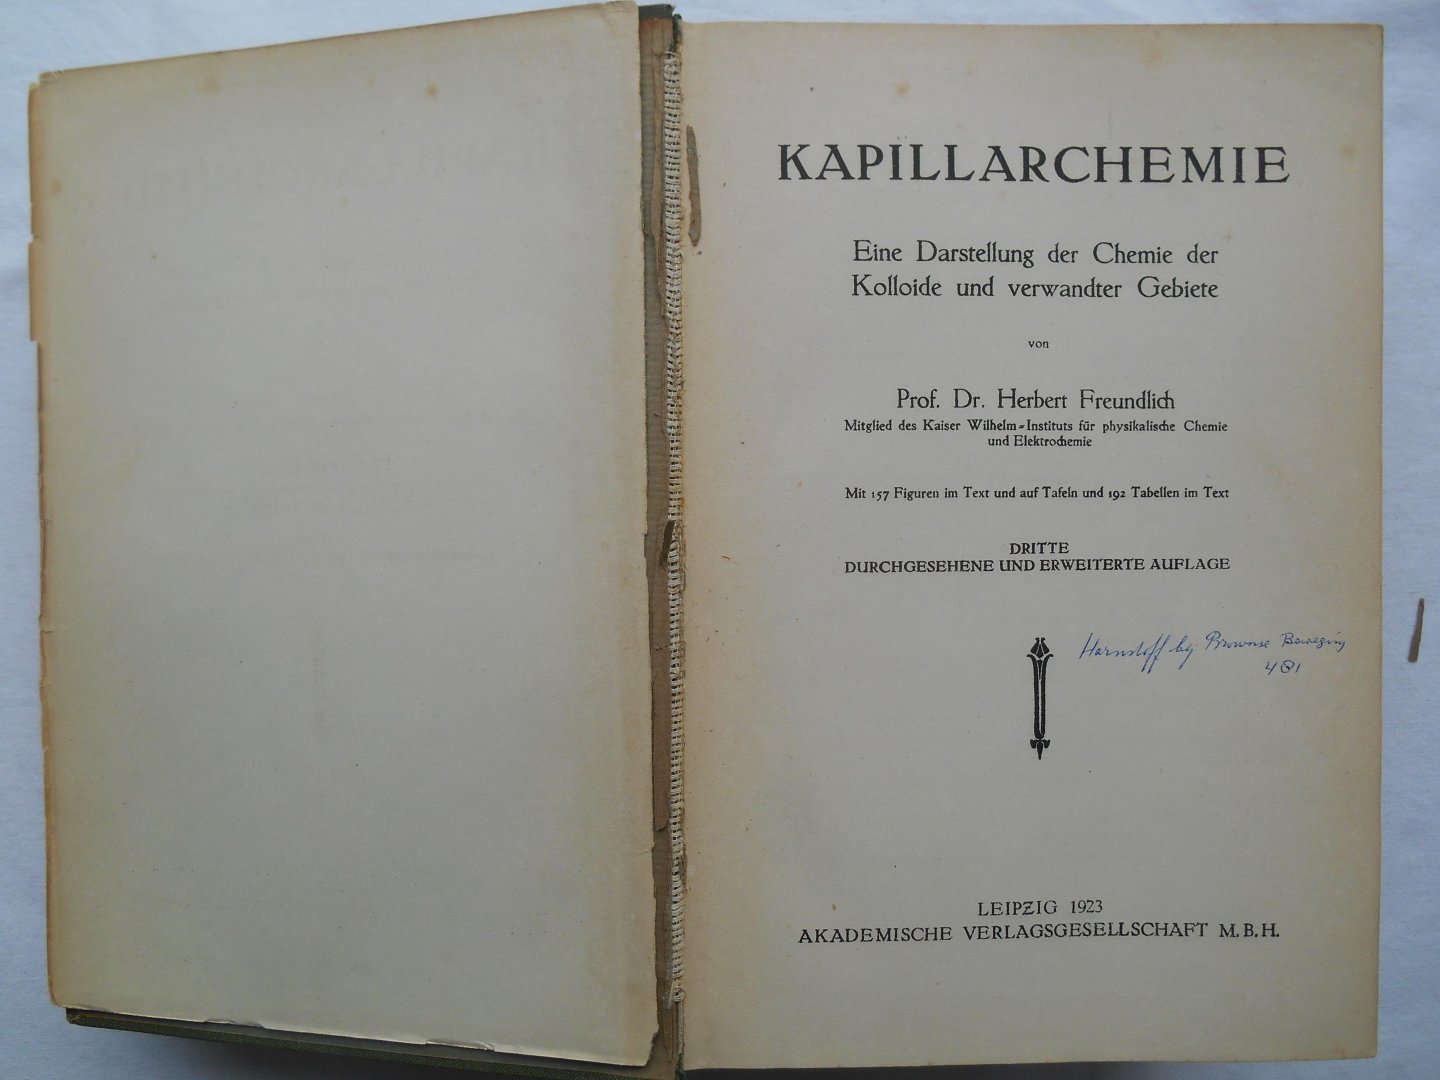 Freundlich, Prof. Herbert - Kapillarchemie